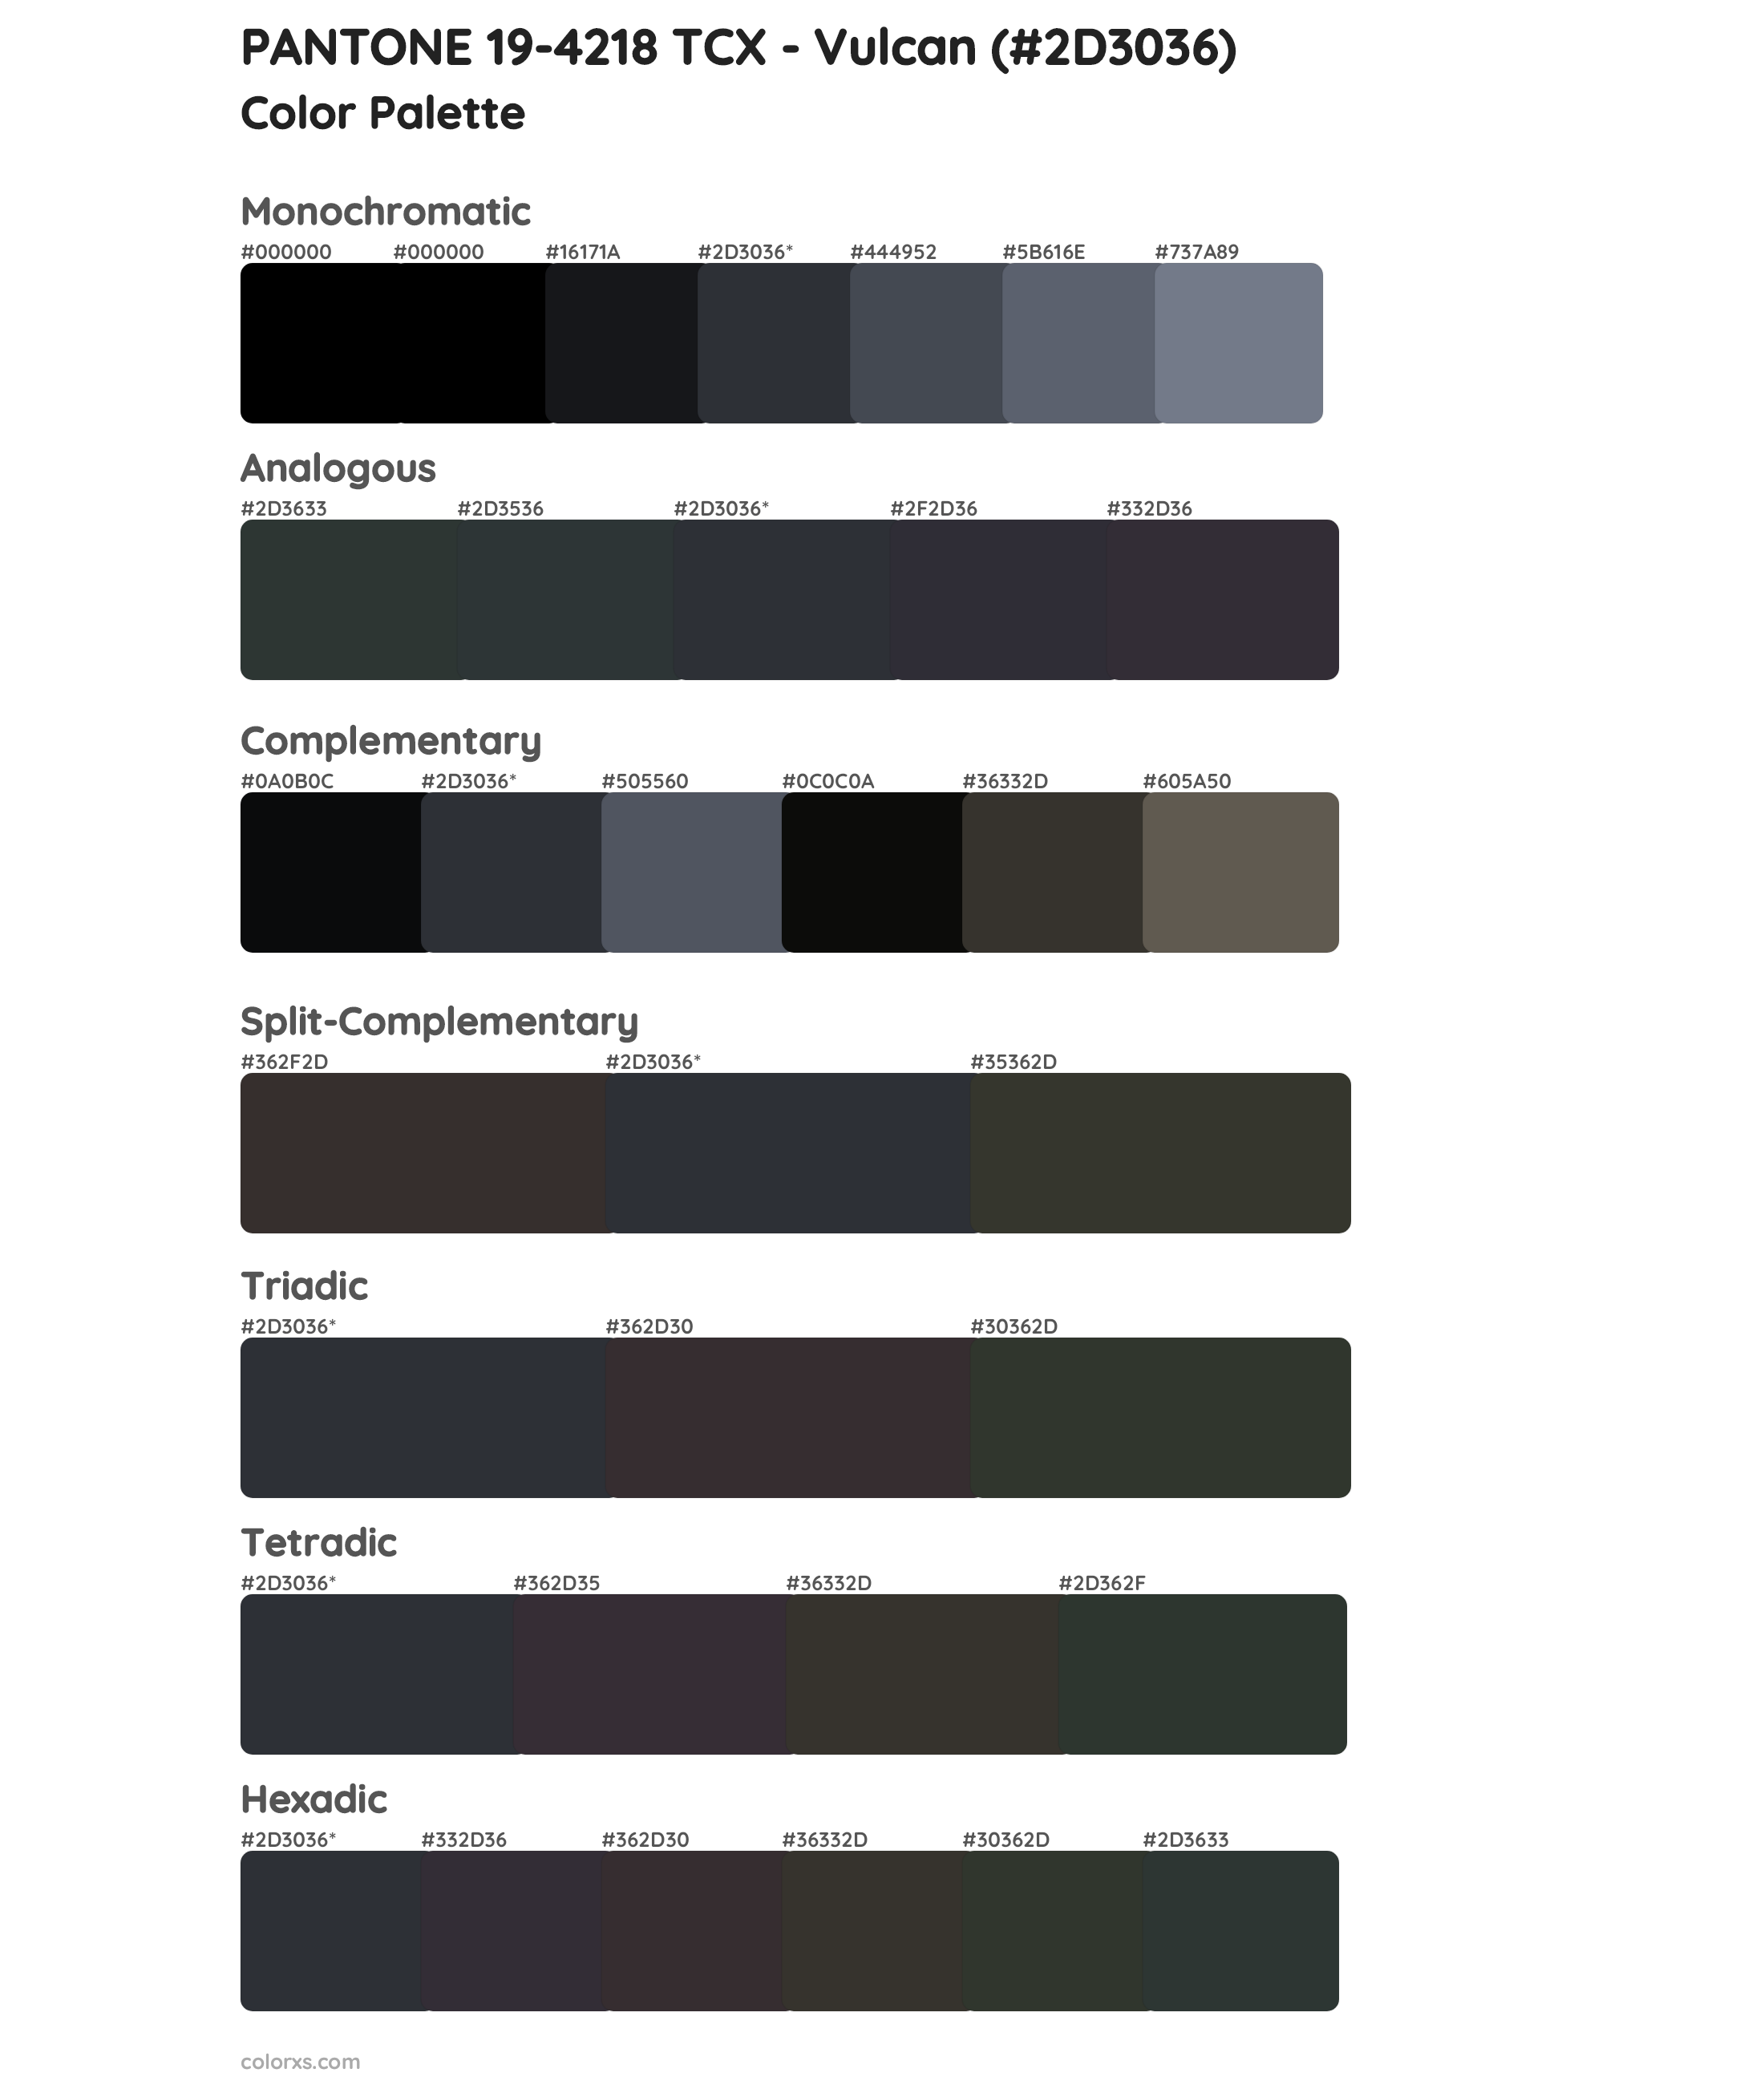 PANTONE 19-4218 TCX - Vulcan Color Scheme Palettes